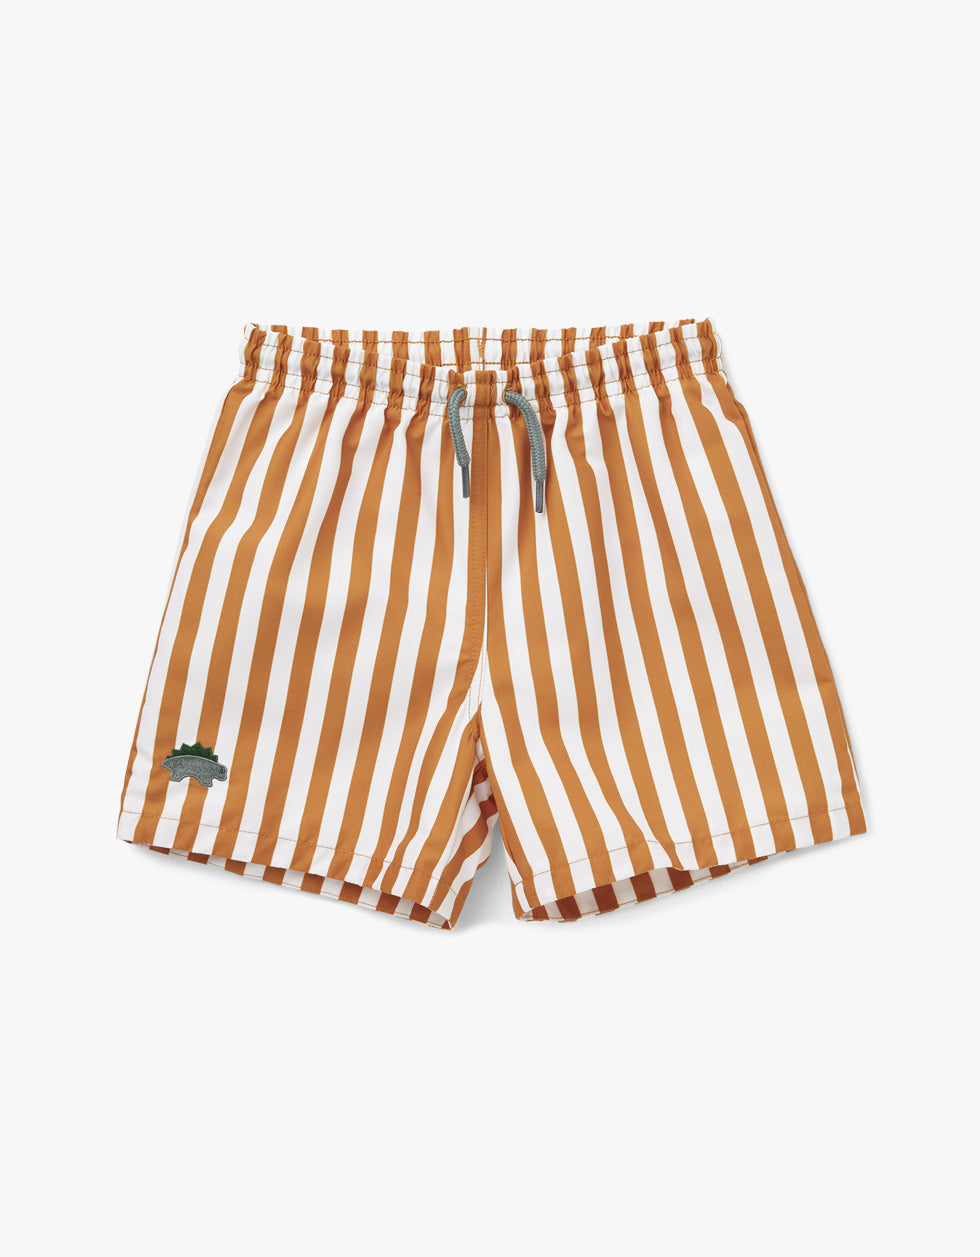 Duke Board Shorts - Stripe: Mustard/White